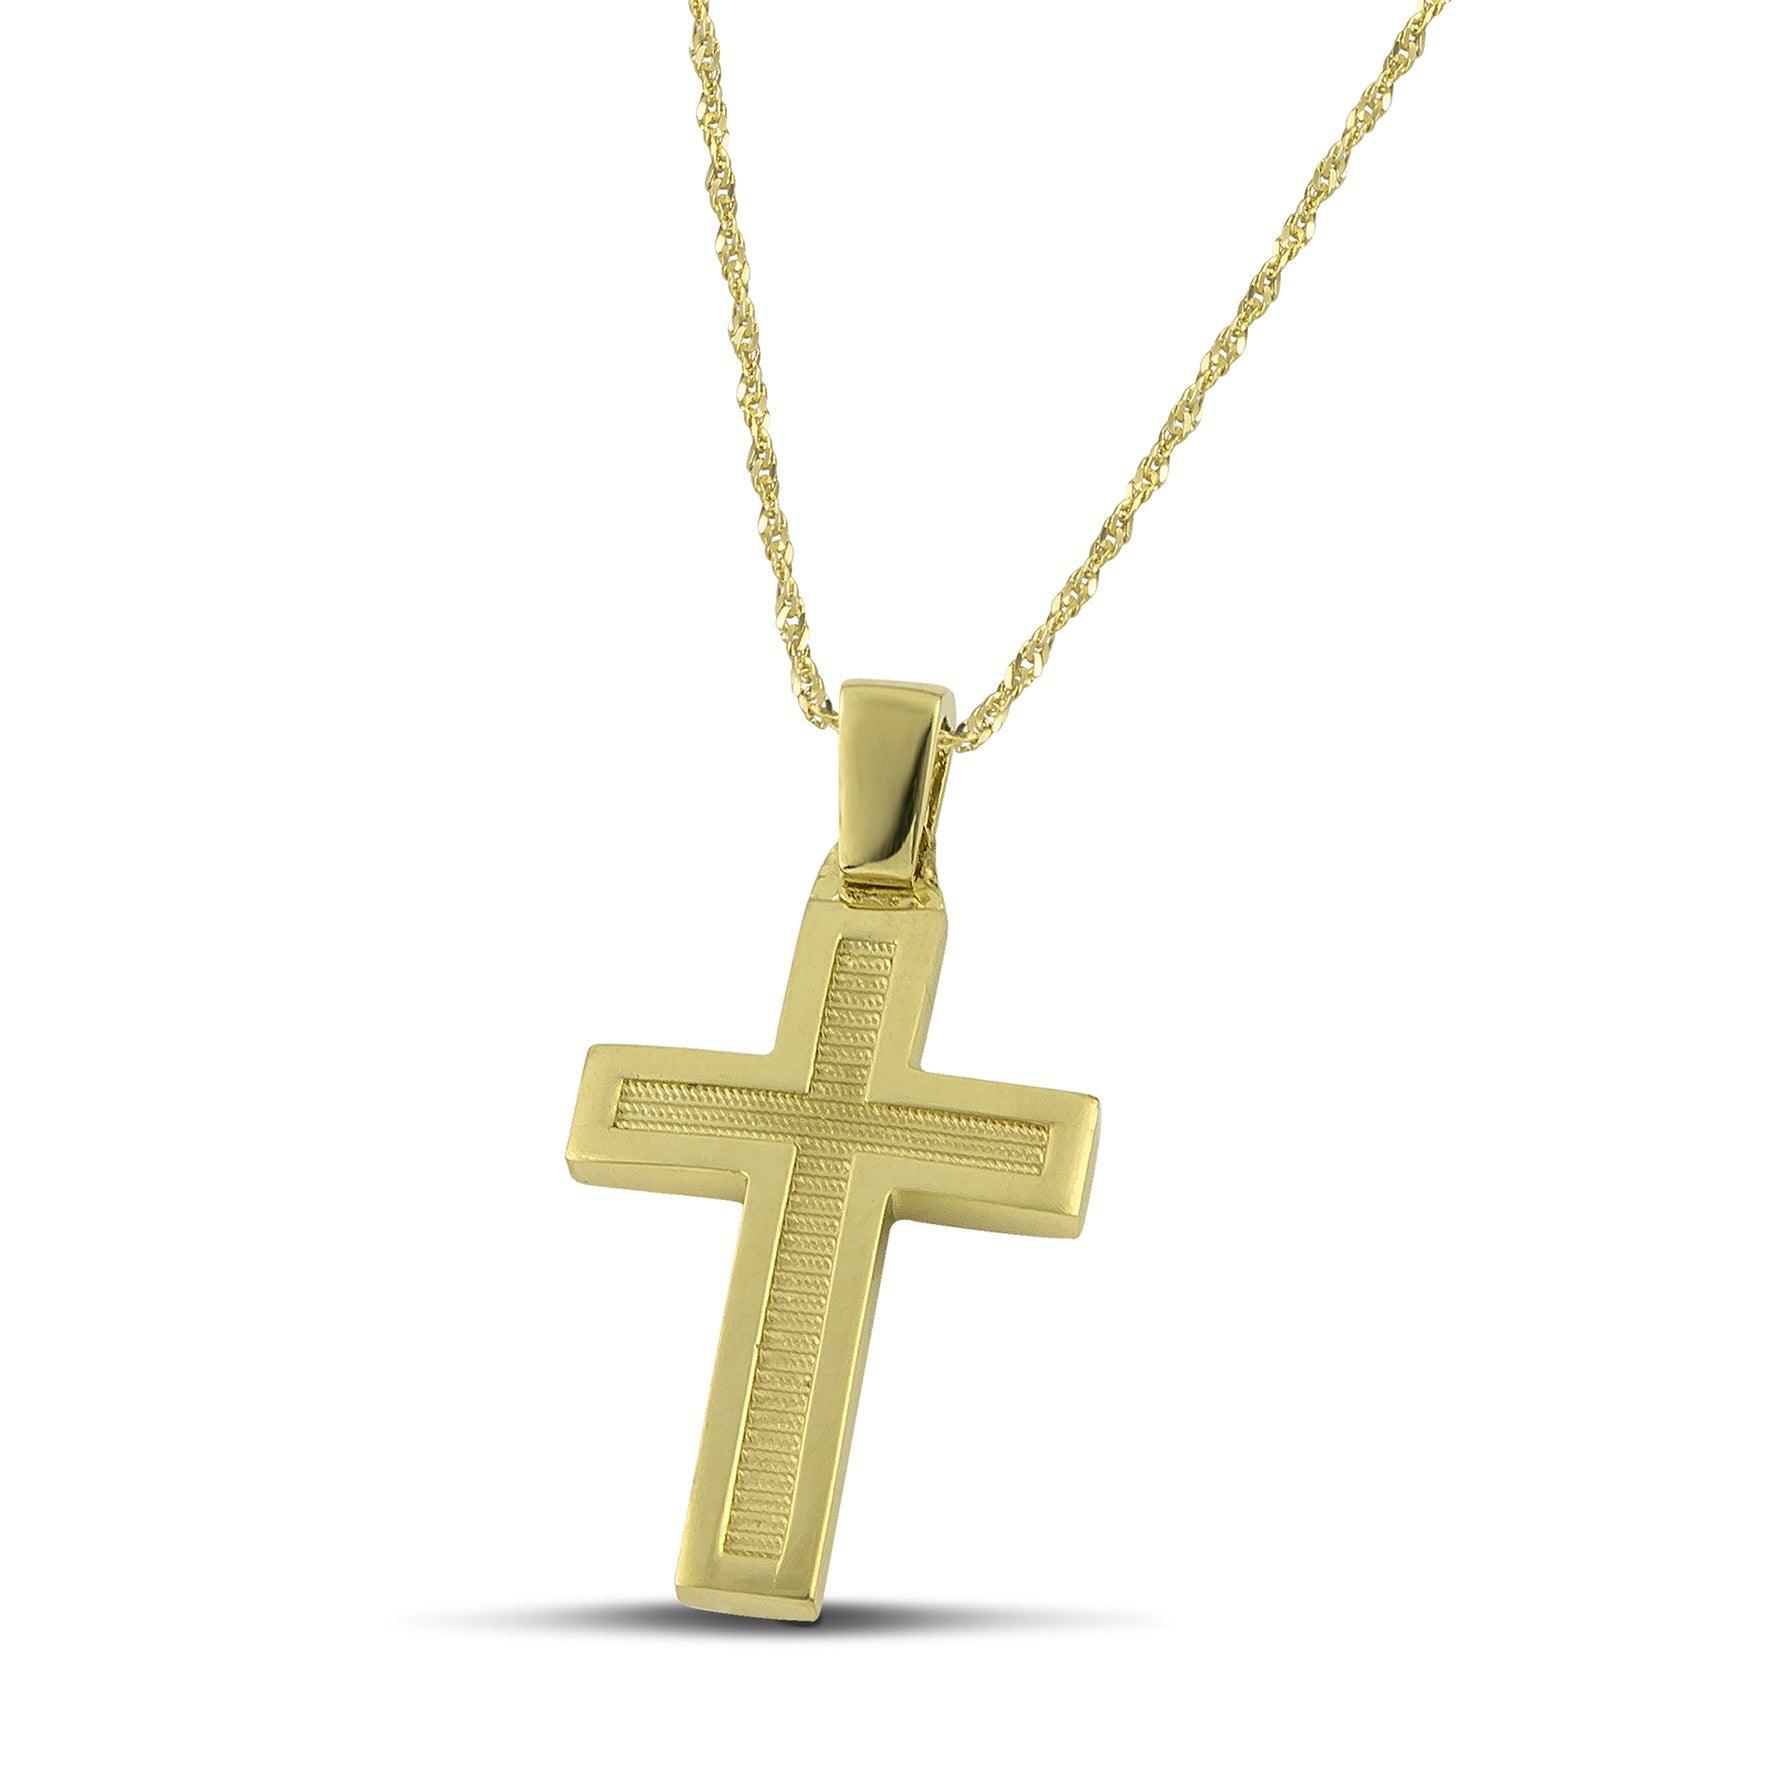 Μοντέρνος βαπτιστικός σταυρός για αγόρι από χρυσό Κ14, διπλής όψης, φορεμένος σε λεπτή, στριφτή  αλυσίδα. 